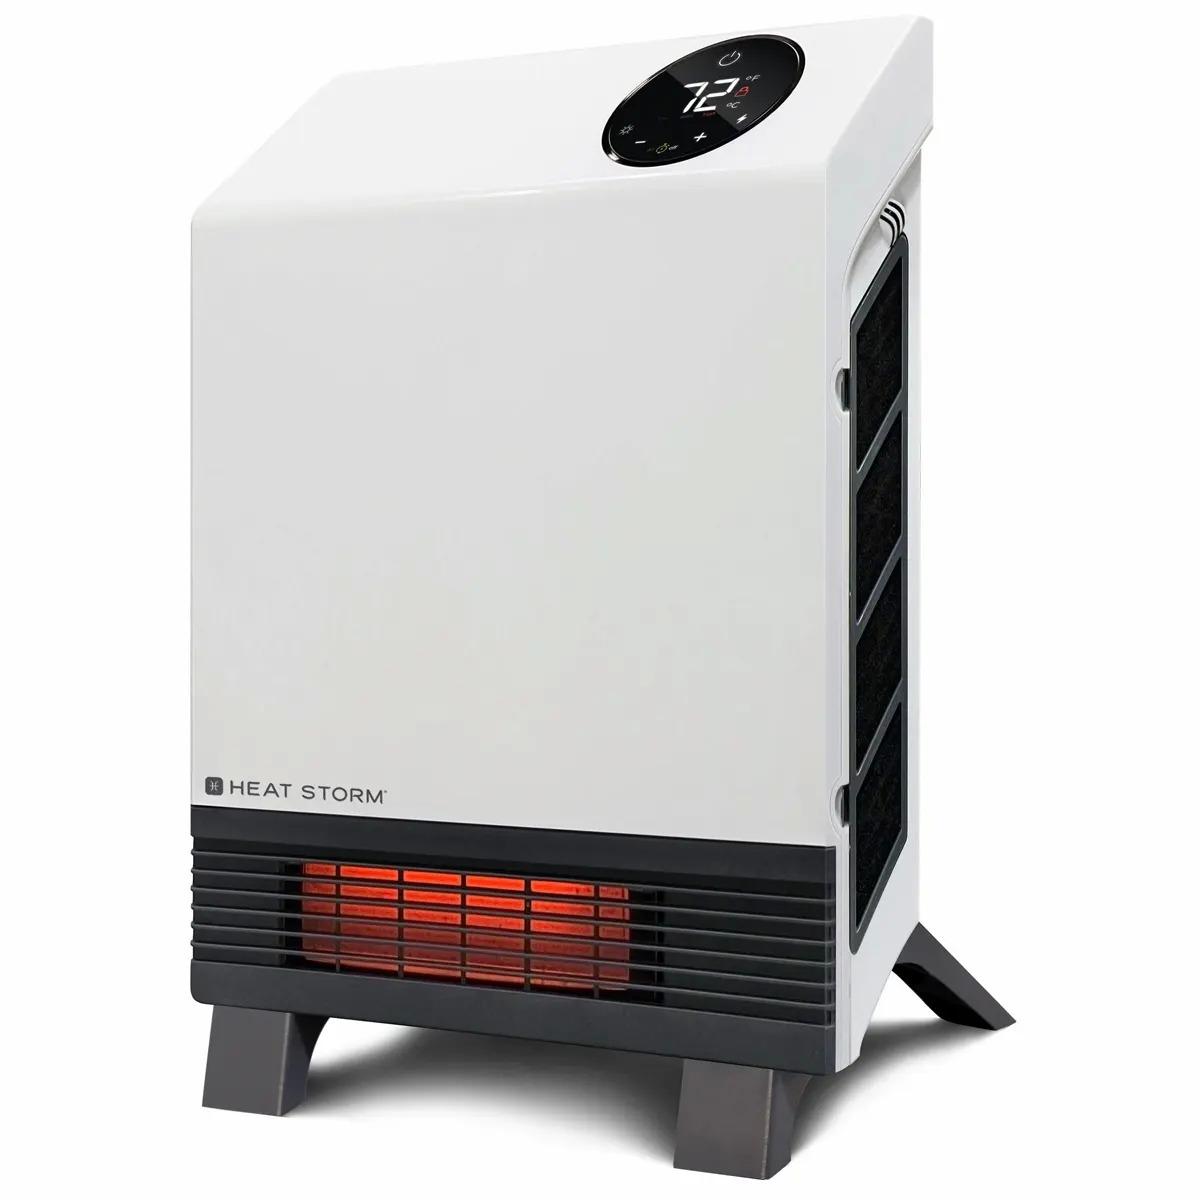 Heat Storm 1000 Watt Infrared Wall Mount Heater for $66.99